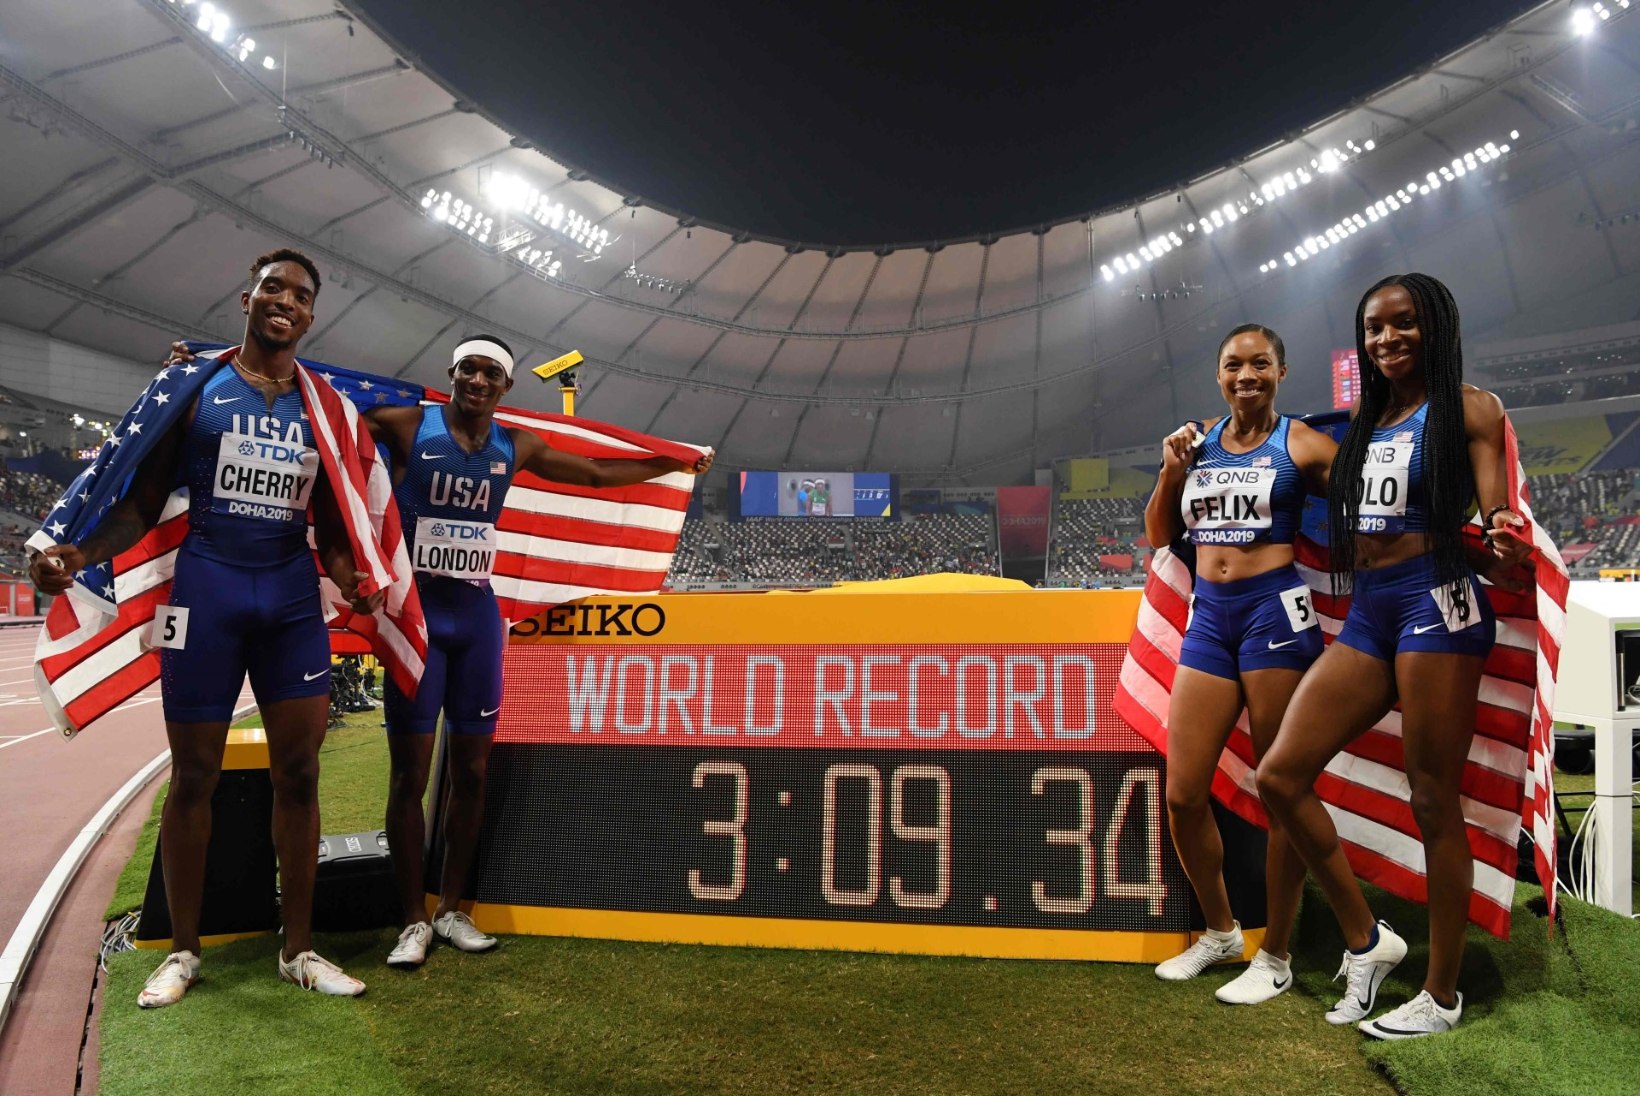 MÜSTILINE NAINE! USA teatevõistkonna maailmarekordini aidanud naissprinter võitis ajaloolise kulla